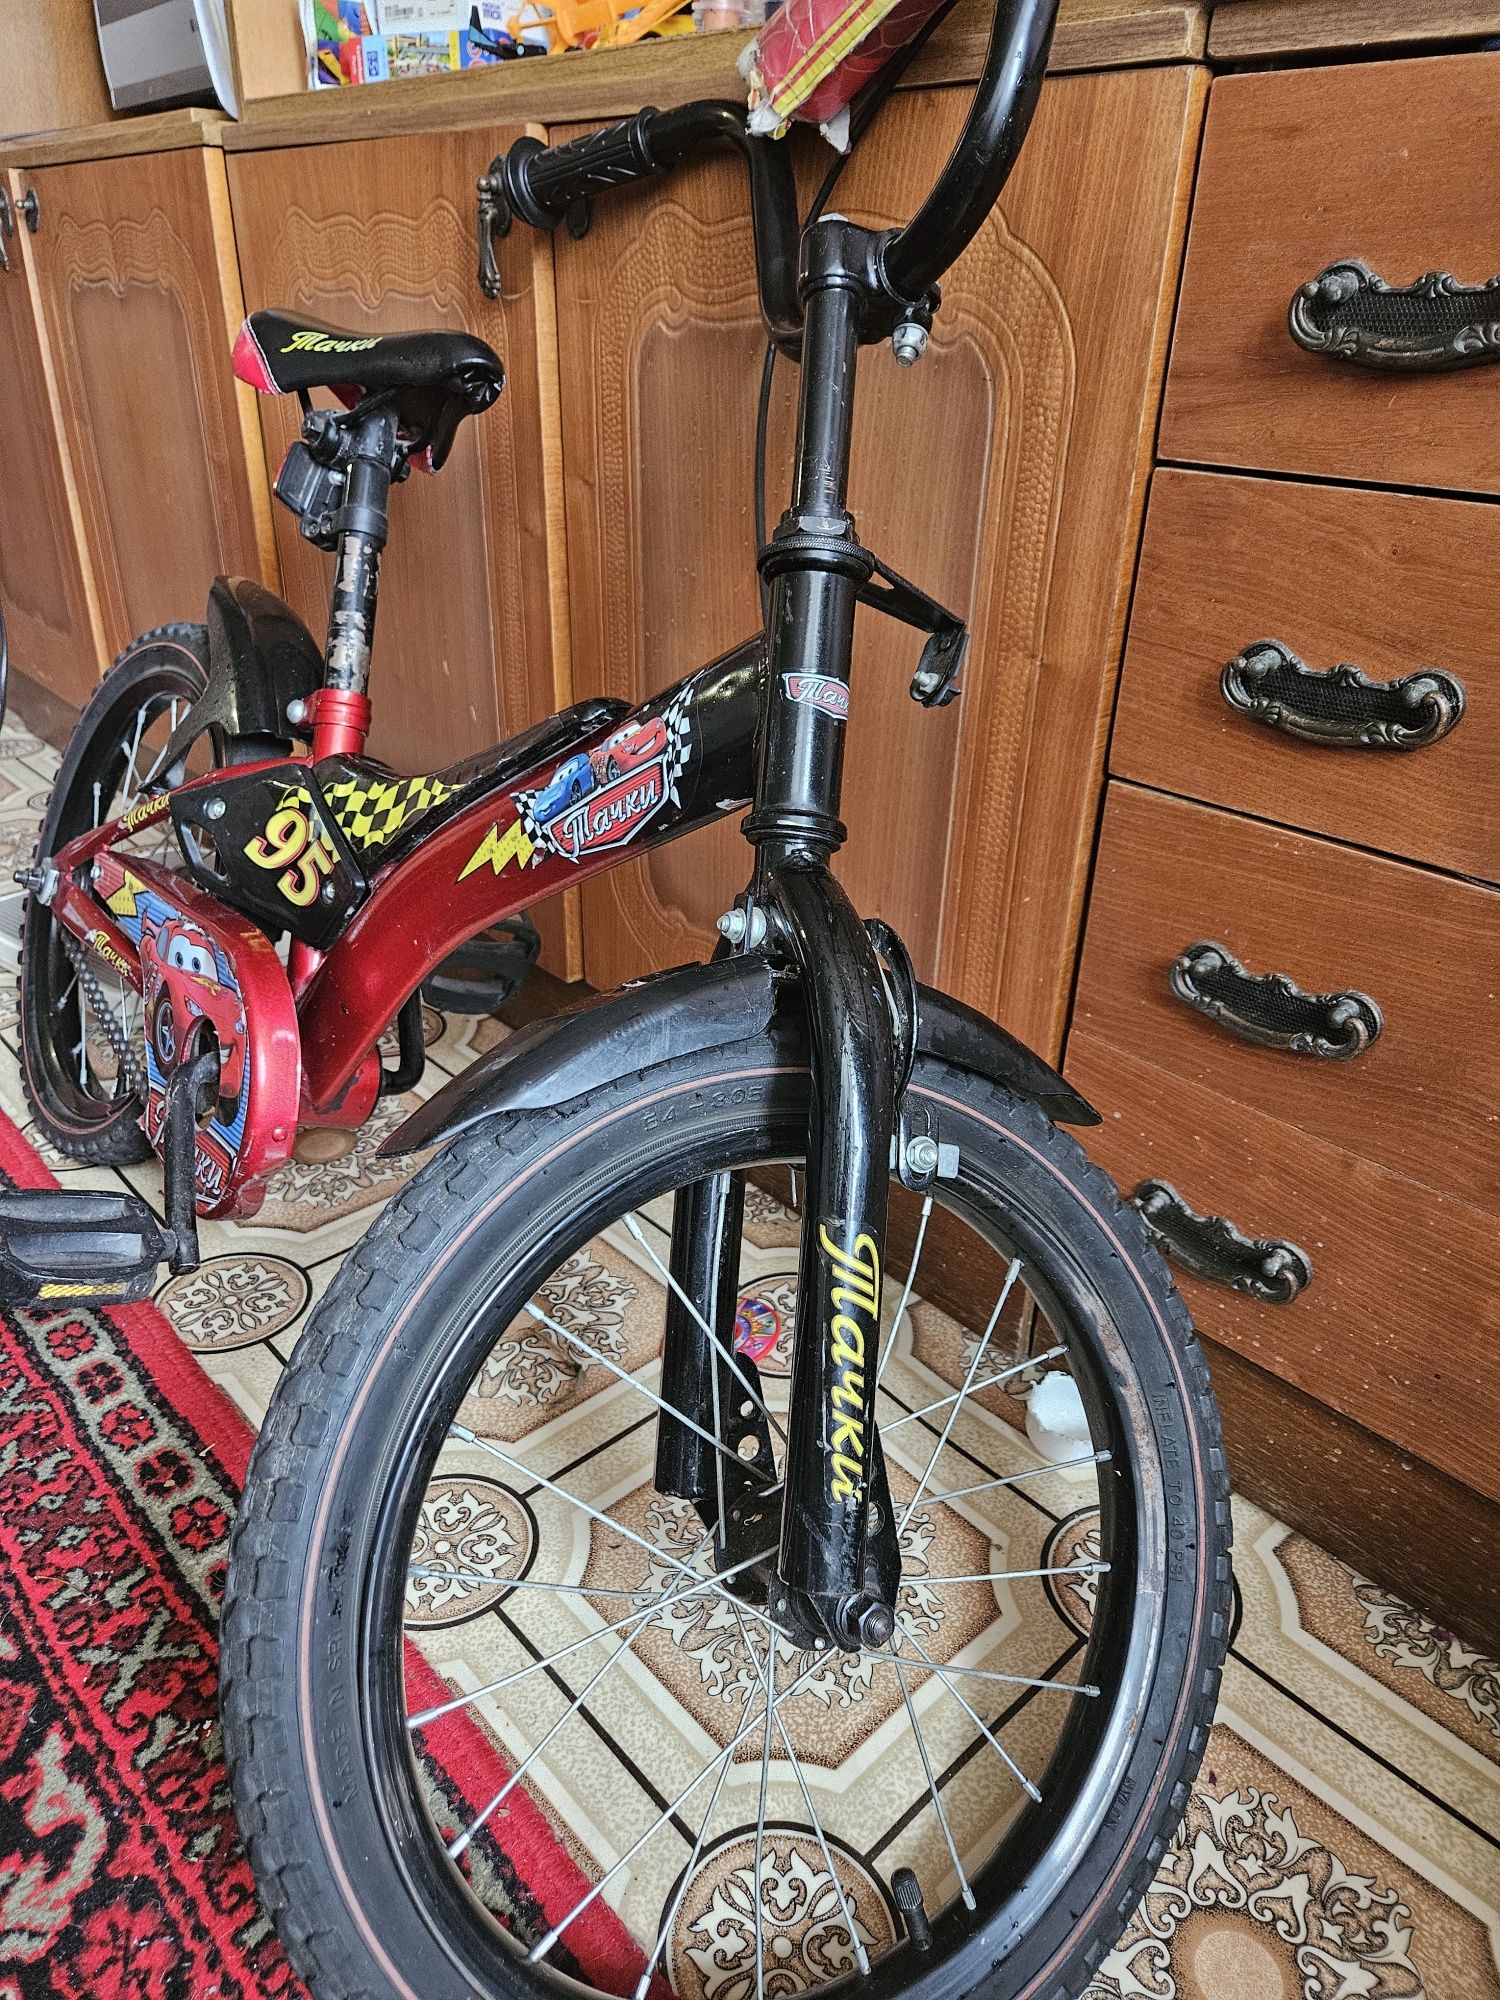 ПРОДАМ велосипед 16(колеса) детский Тачки самокат в подарок